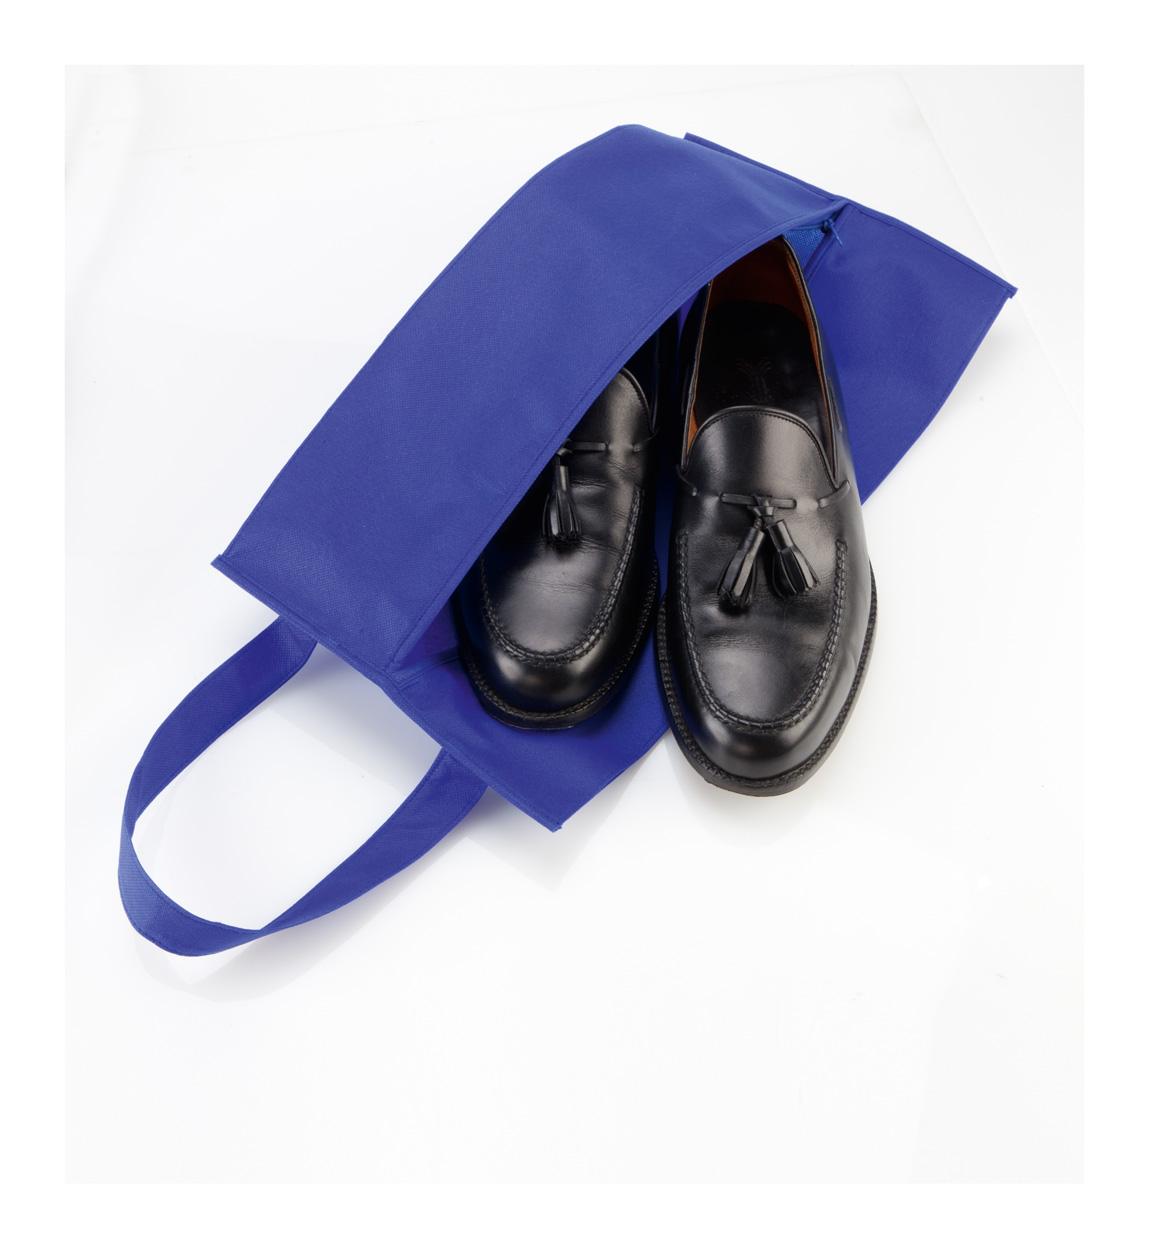 Promo  Recco shoe bag